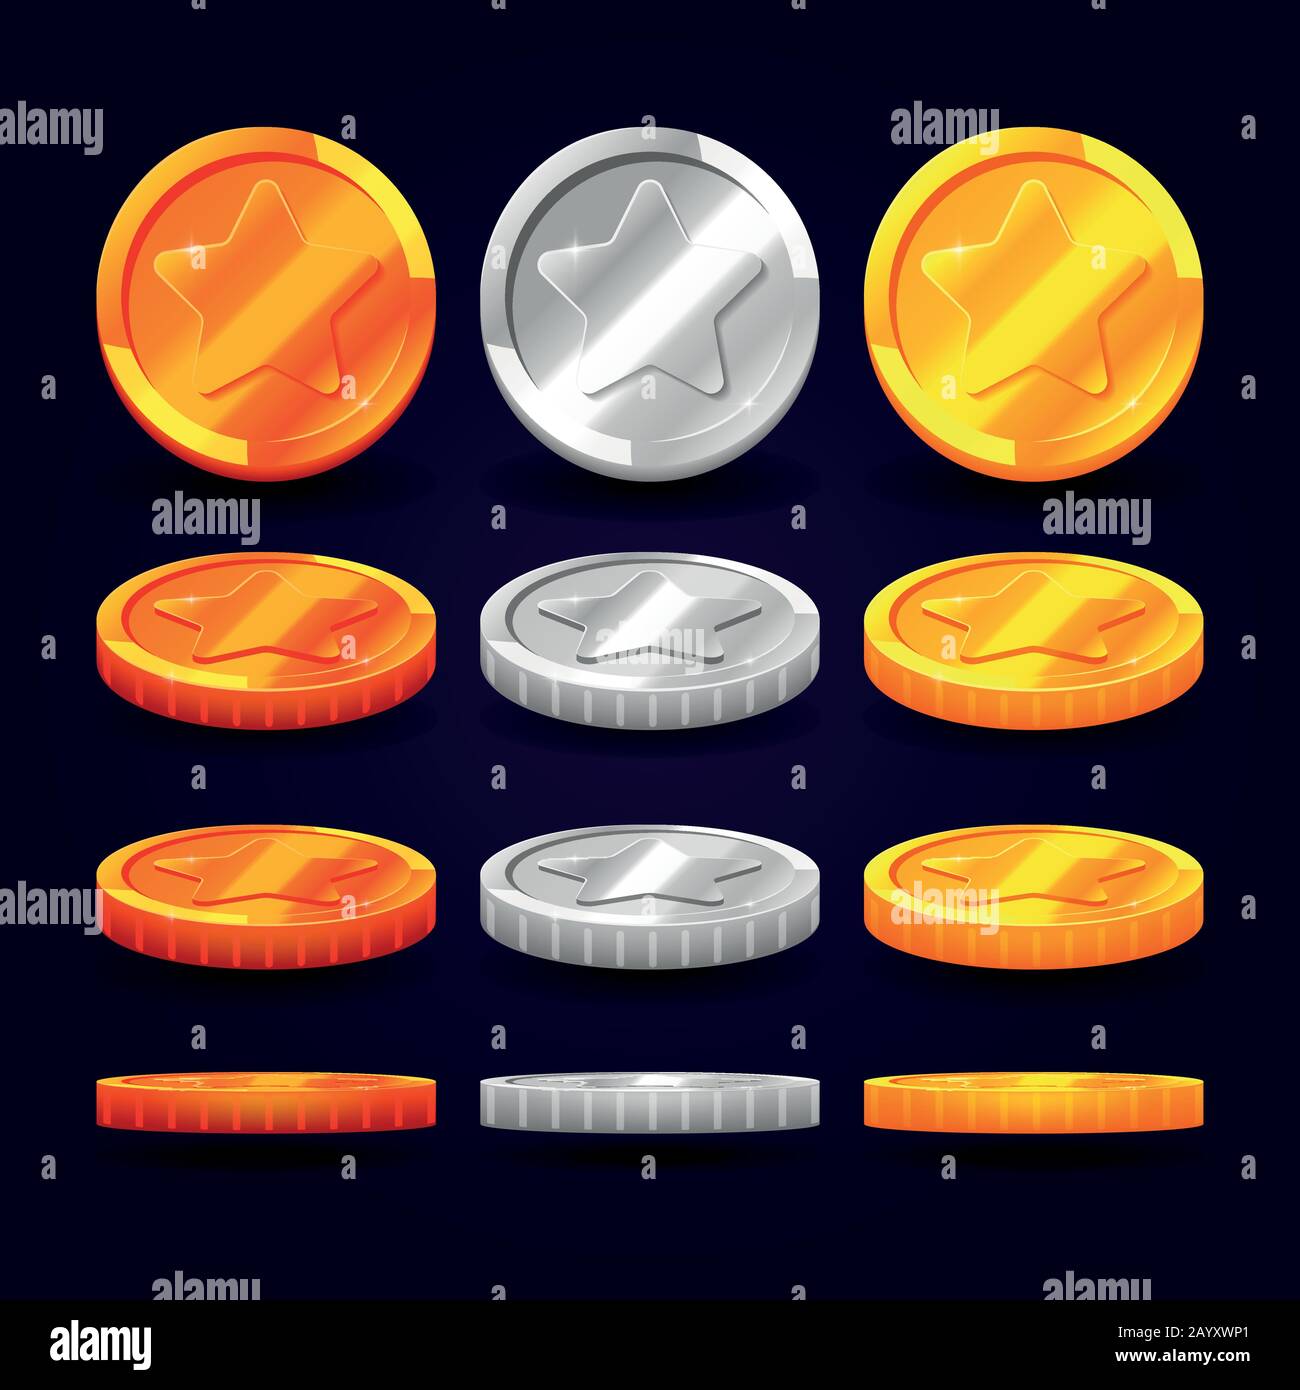 Monete d'oro, d'argento e di rame in posizioni diverse. Elementi vettoriali per animazioni e giochi per computer. Set di monete metalliche, illustrazione di moneta moneta Illustrazione Vettoriale